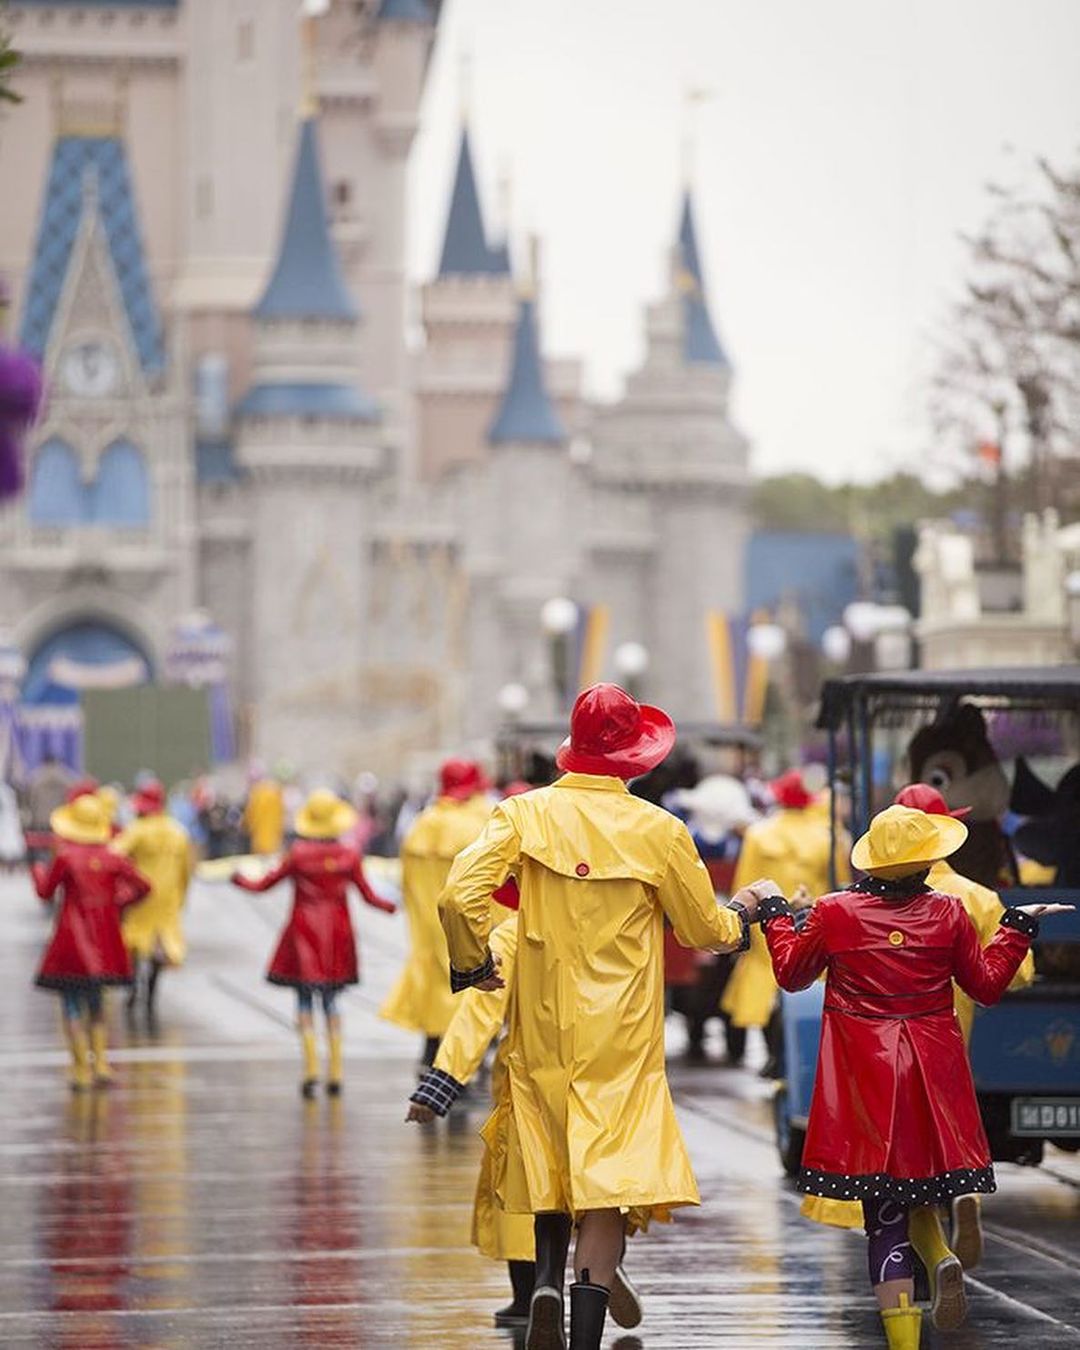 Magic Kingdom with Rain – Wann ist die beste Reisezeit für Disney und Orlando?